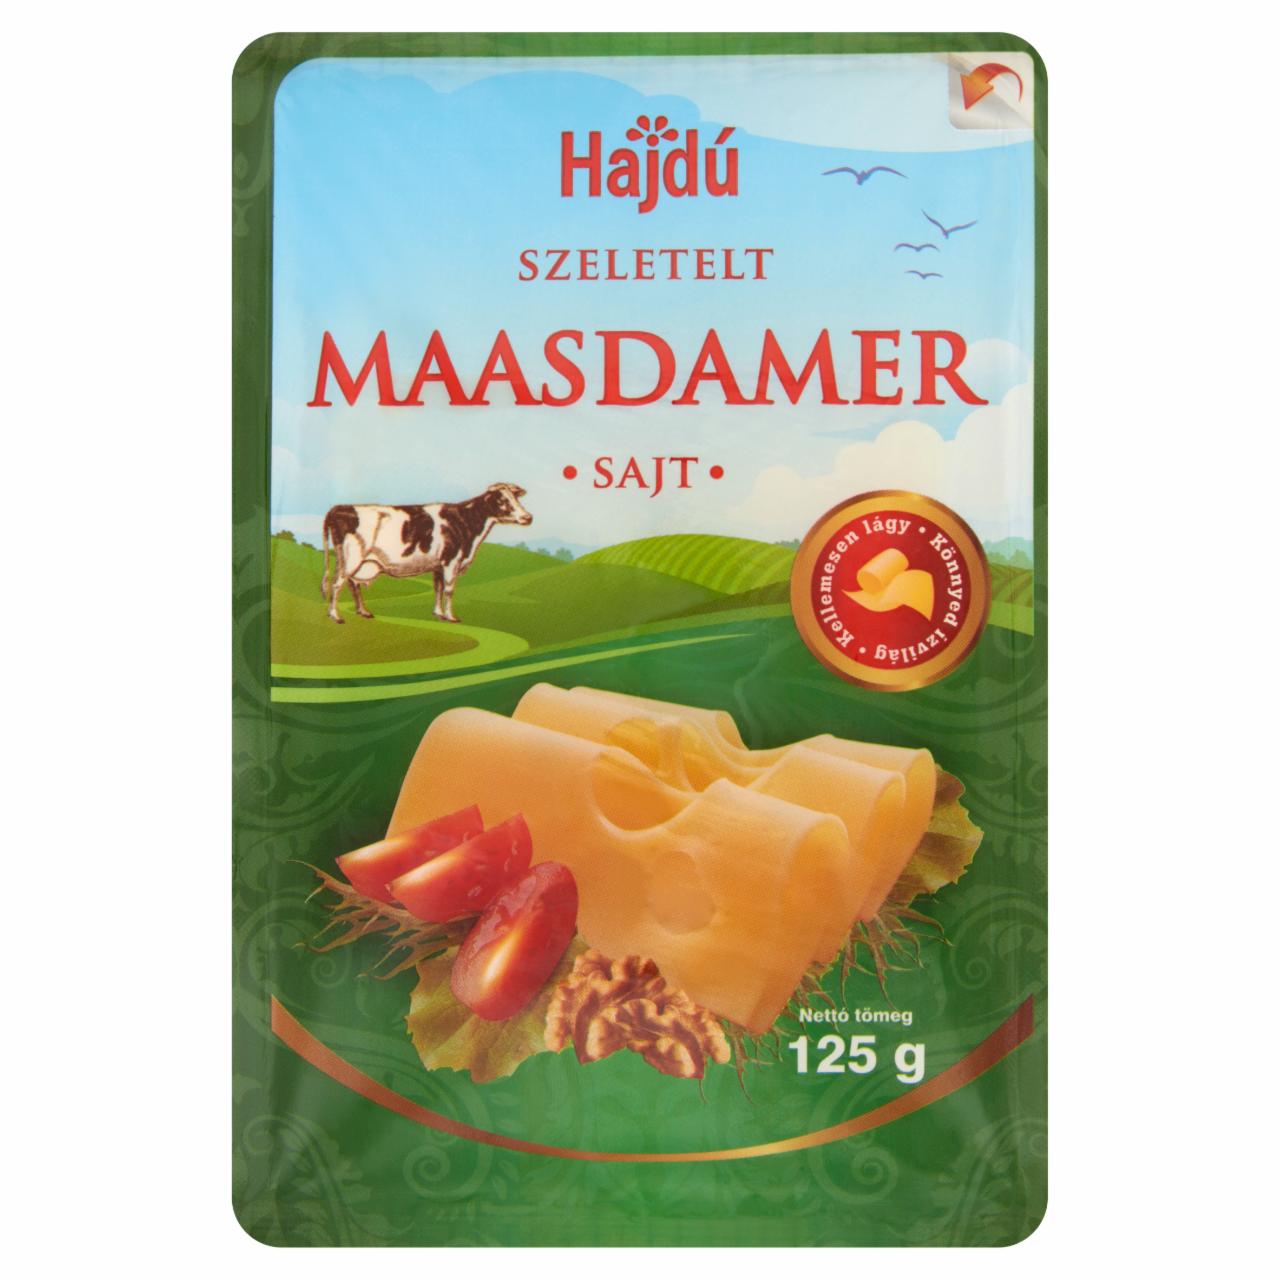 Képek - Hajdú Maasdammer szeletelt sajt 125g